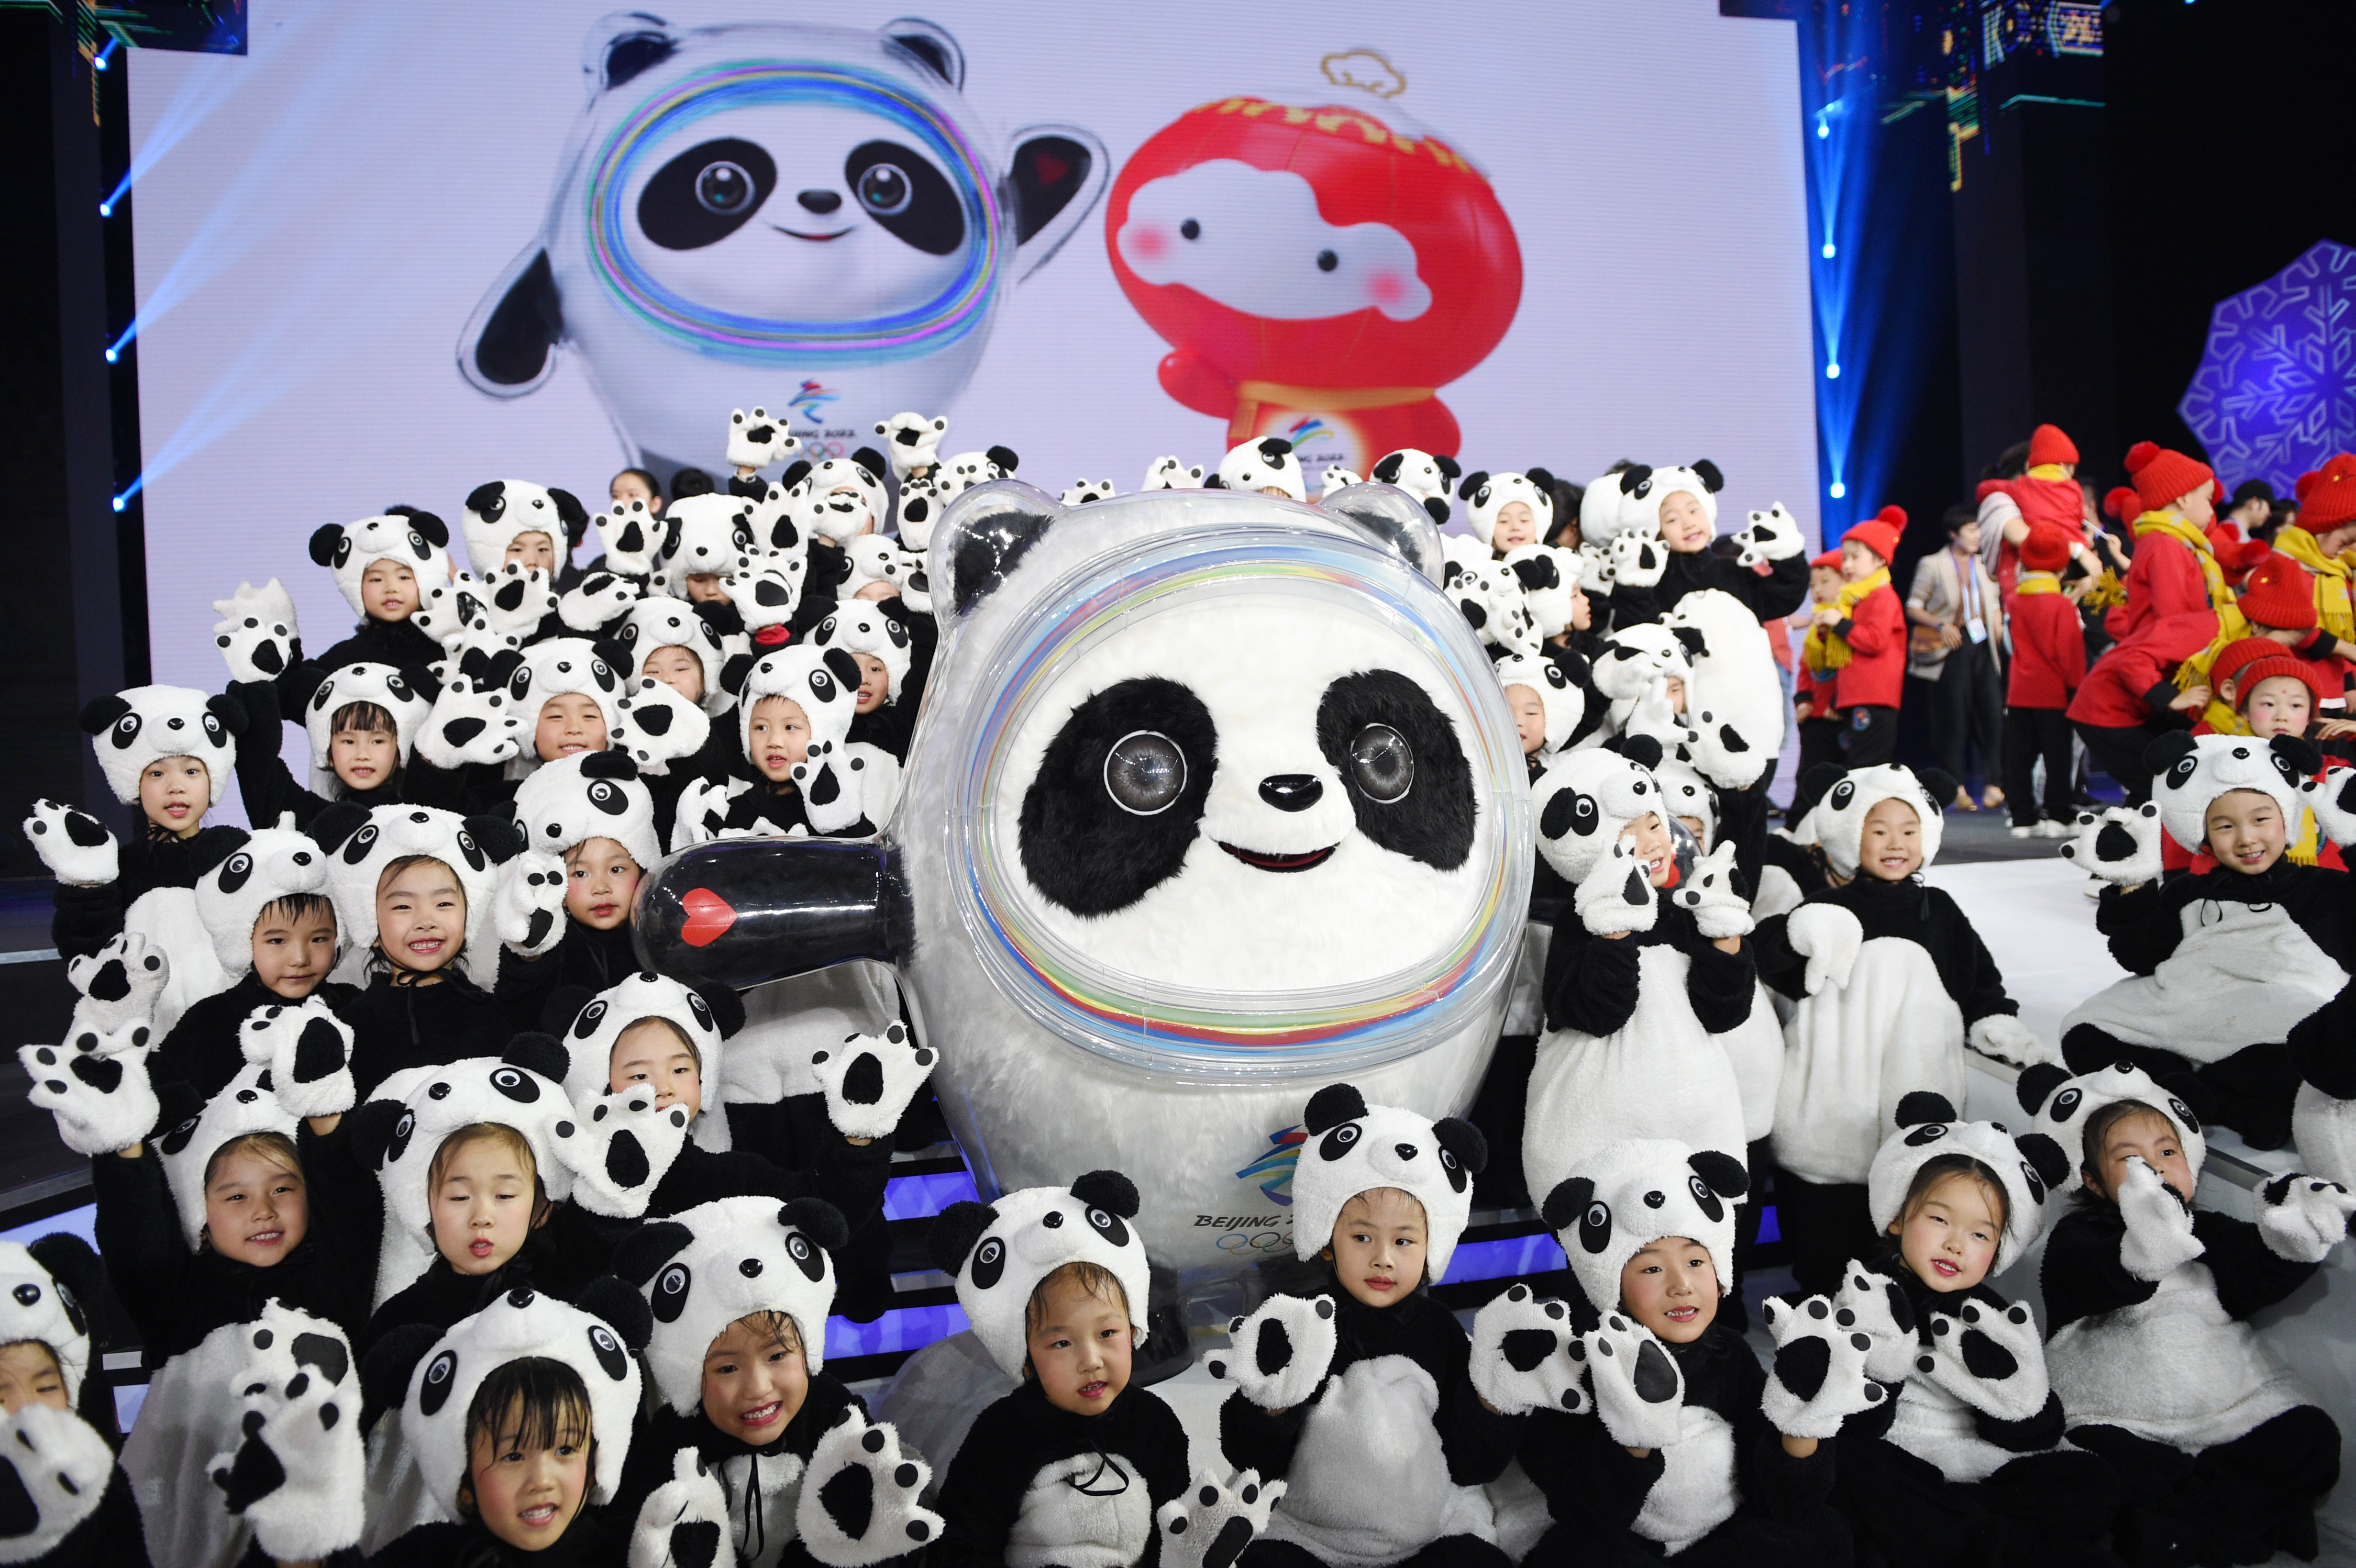 北京2022年冬奥会吉祥物和冬残奥会吉祥物发布活动在京举行